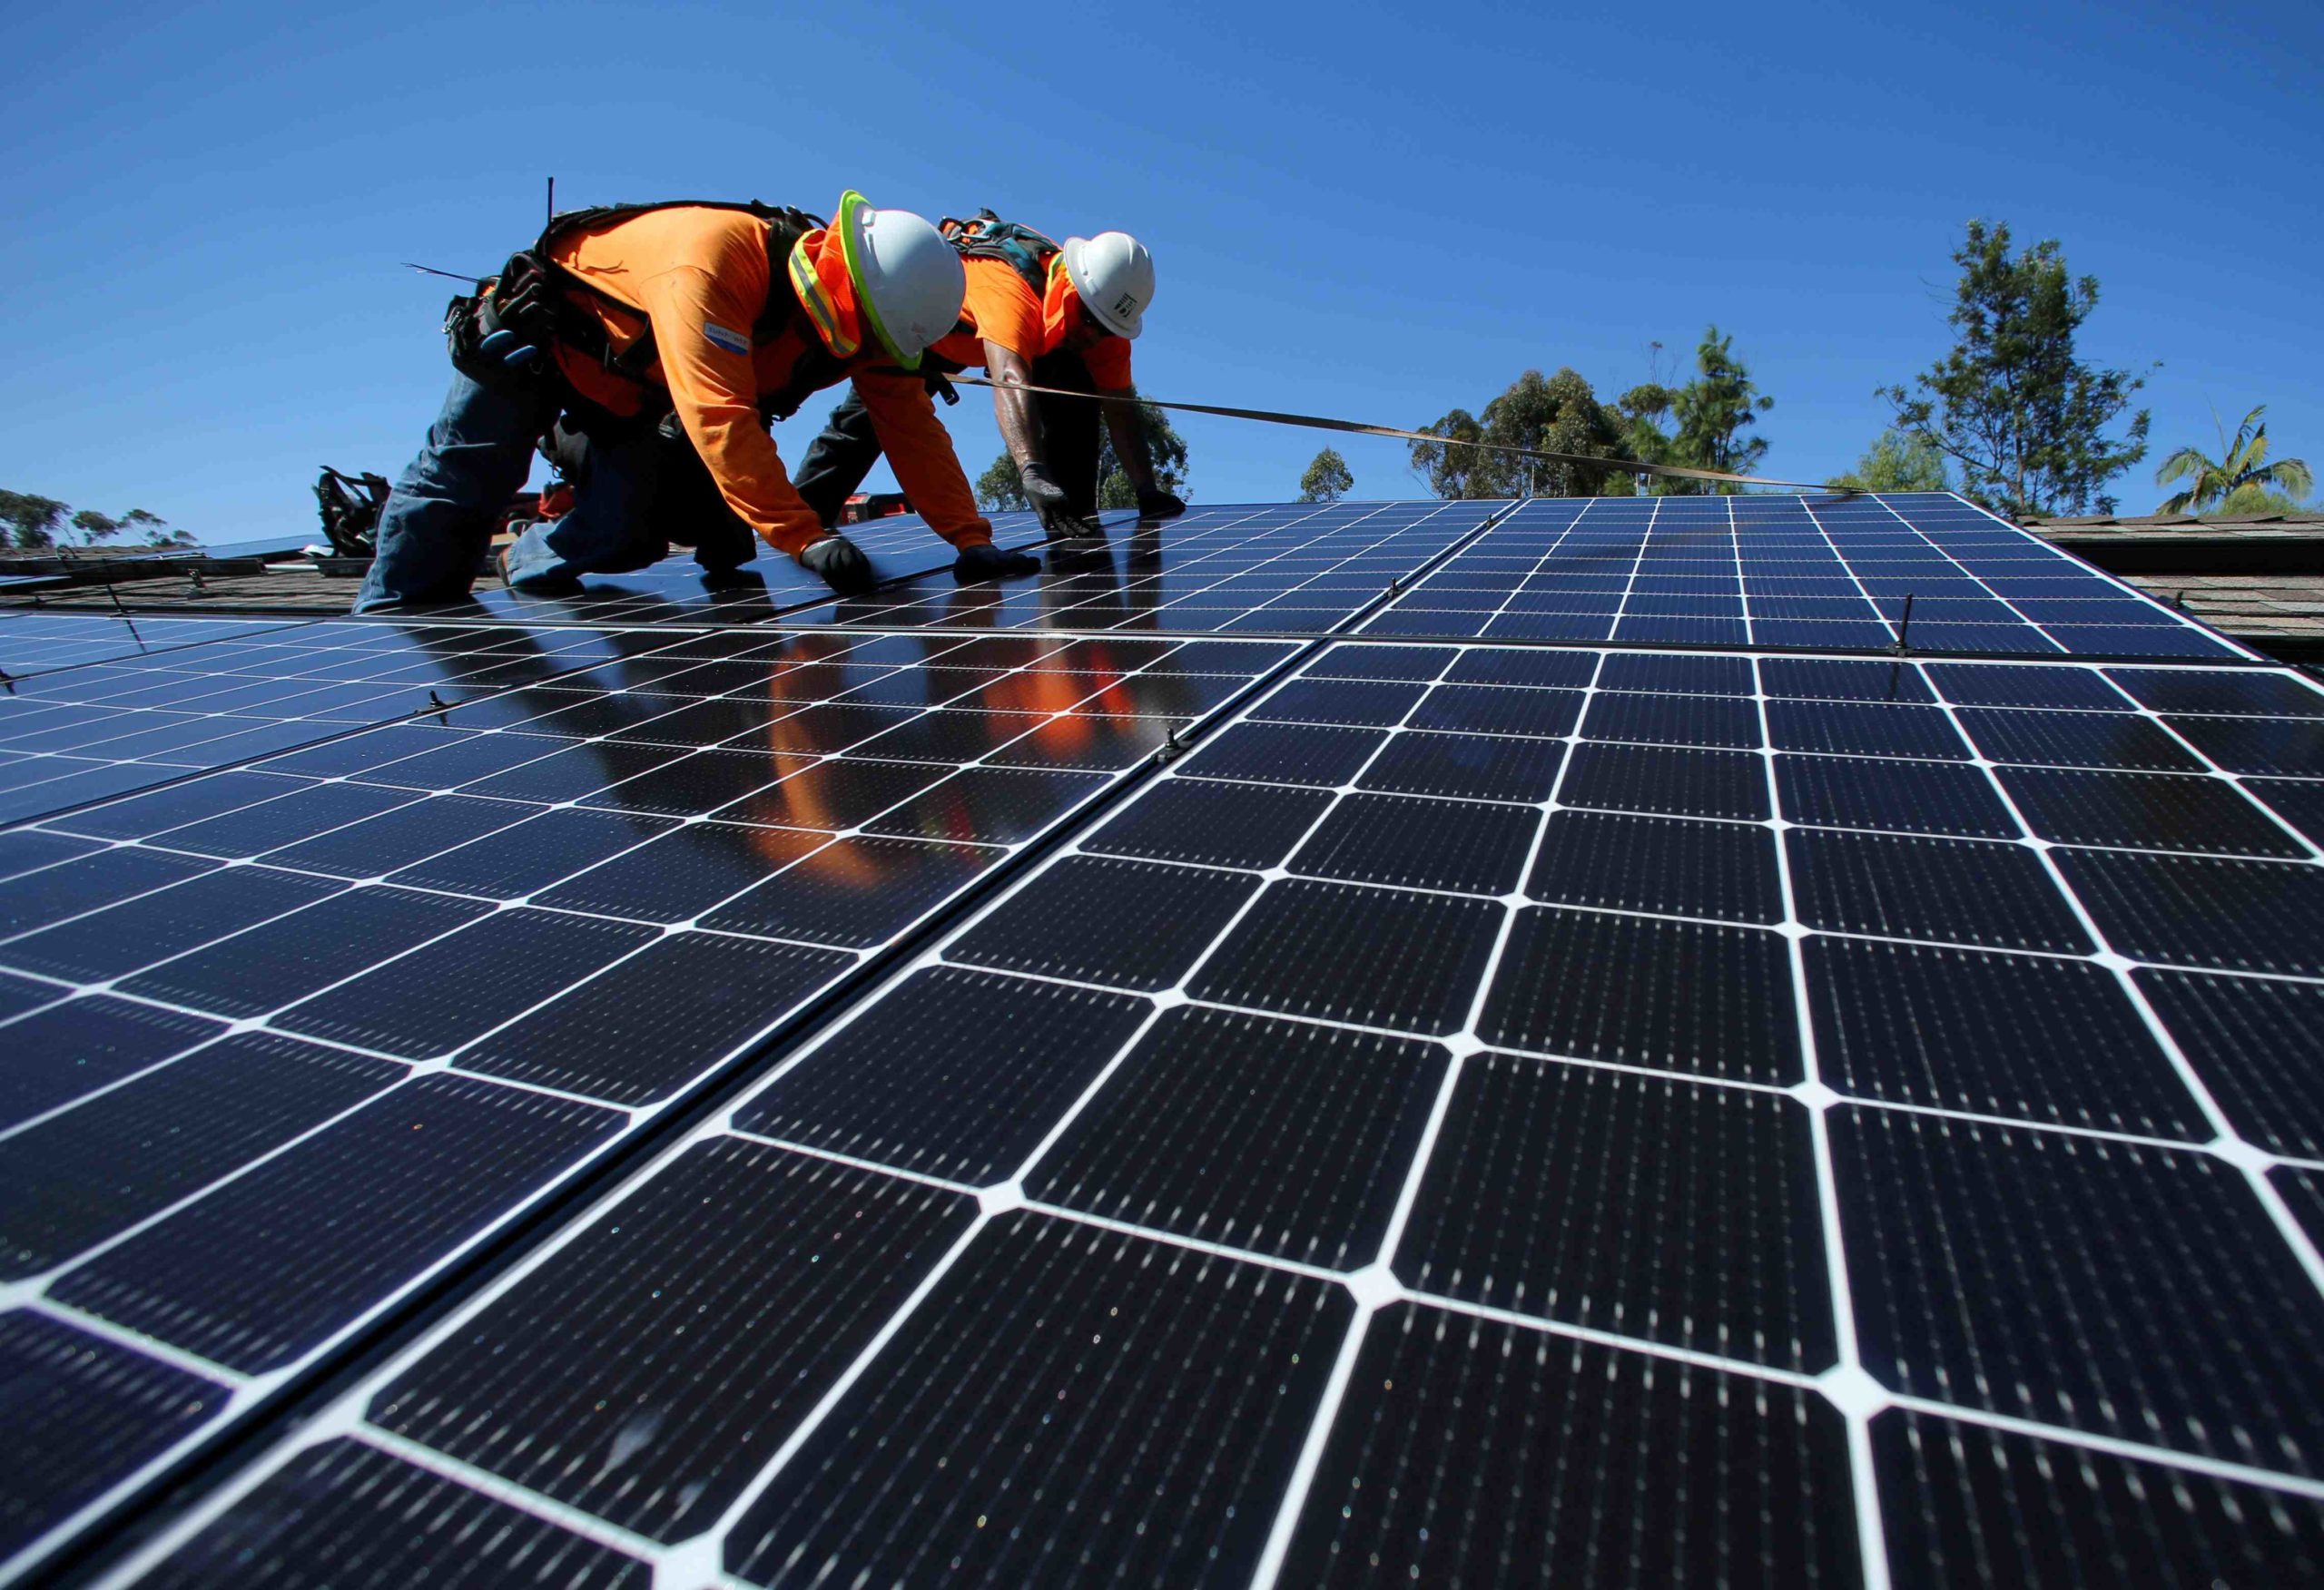 Does SDG&E buy back solar power?